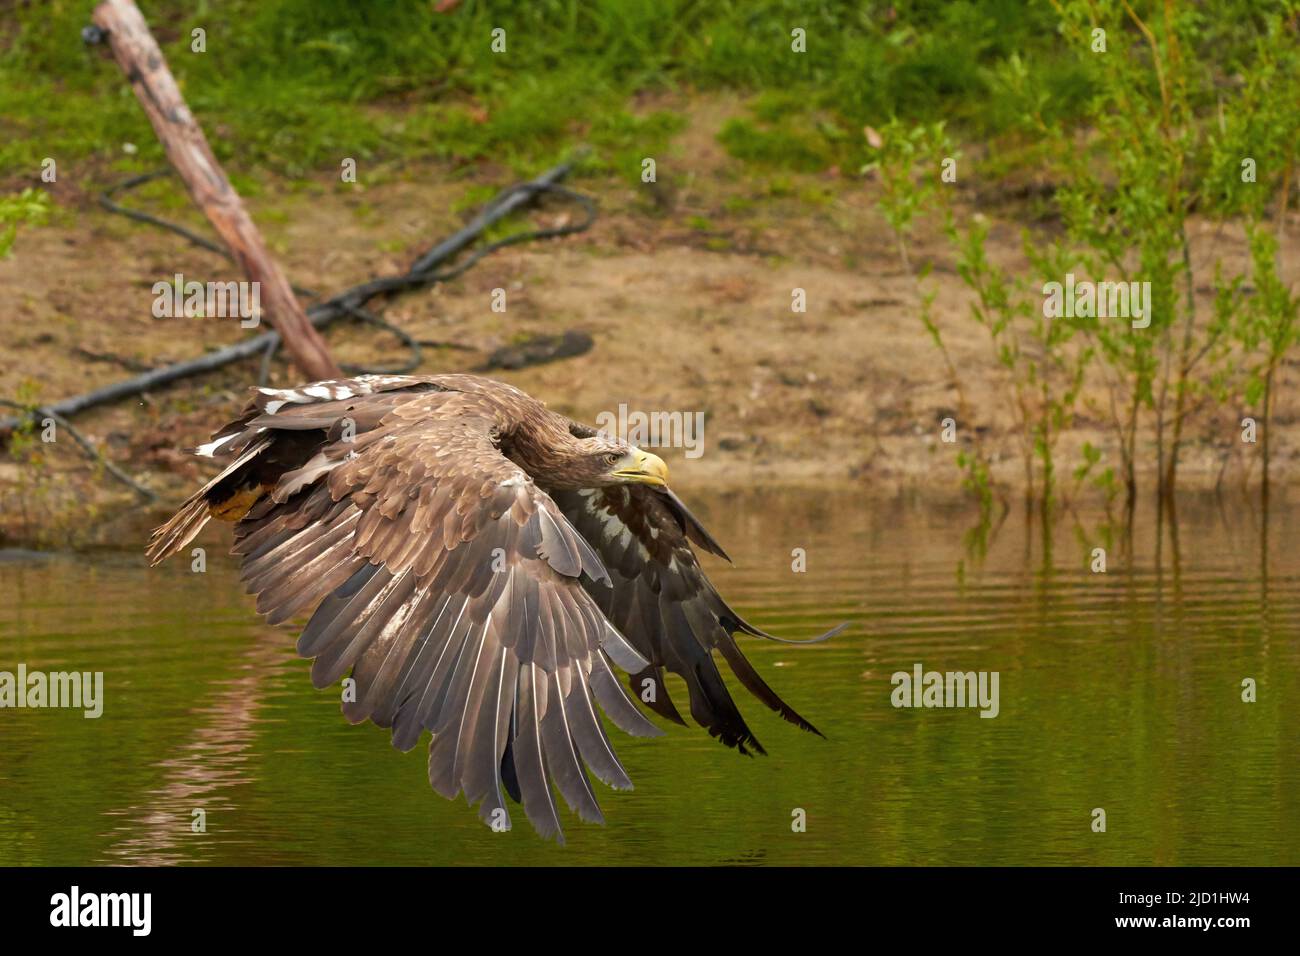 Un aigle à tête blanche de chasse vole au-dessus de la surface de l'eau d'un lac vert à la recherche de poissons. Arbres en arrière-plan, réflexion, détail Banque D'Images